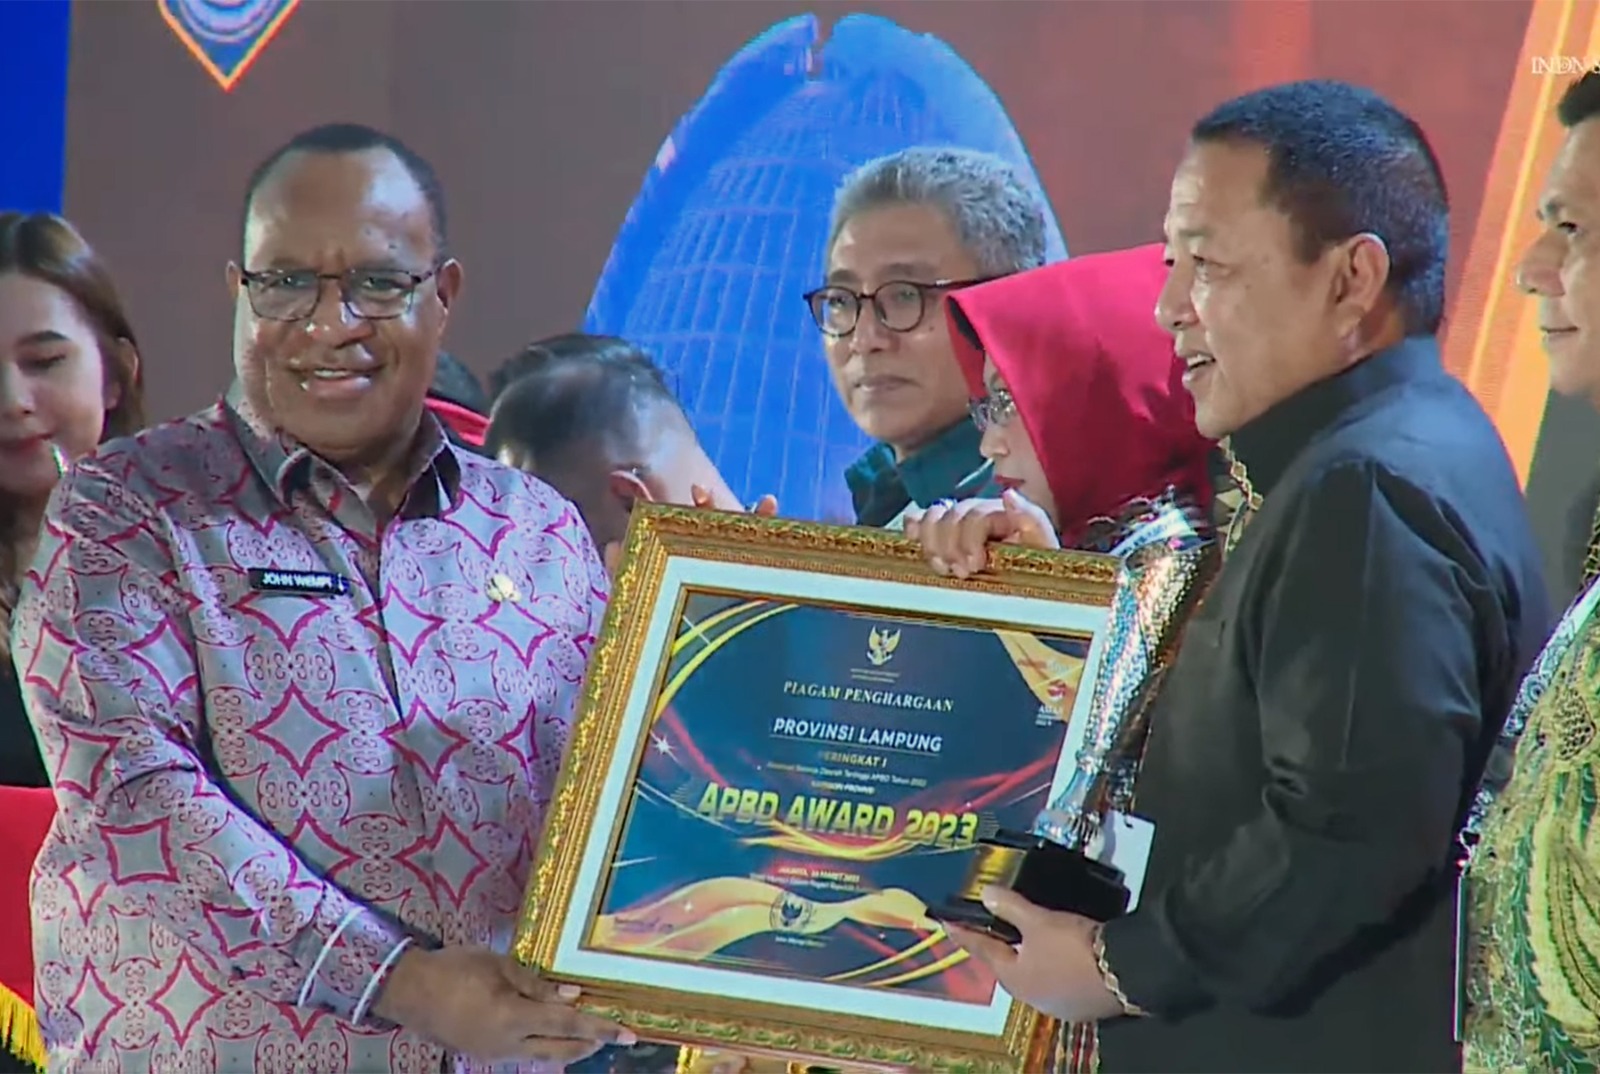 Realisasi APBD Lampung 2022 Tertinggi se Indonesia, Gubernur Arinal Dapat Penghargaan Dari Kemendagri